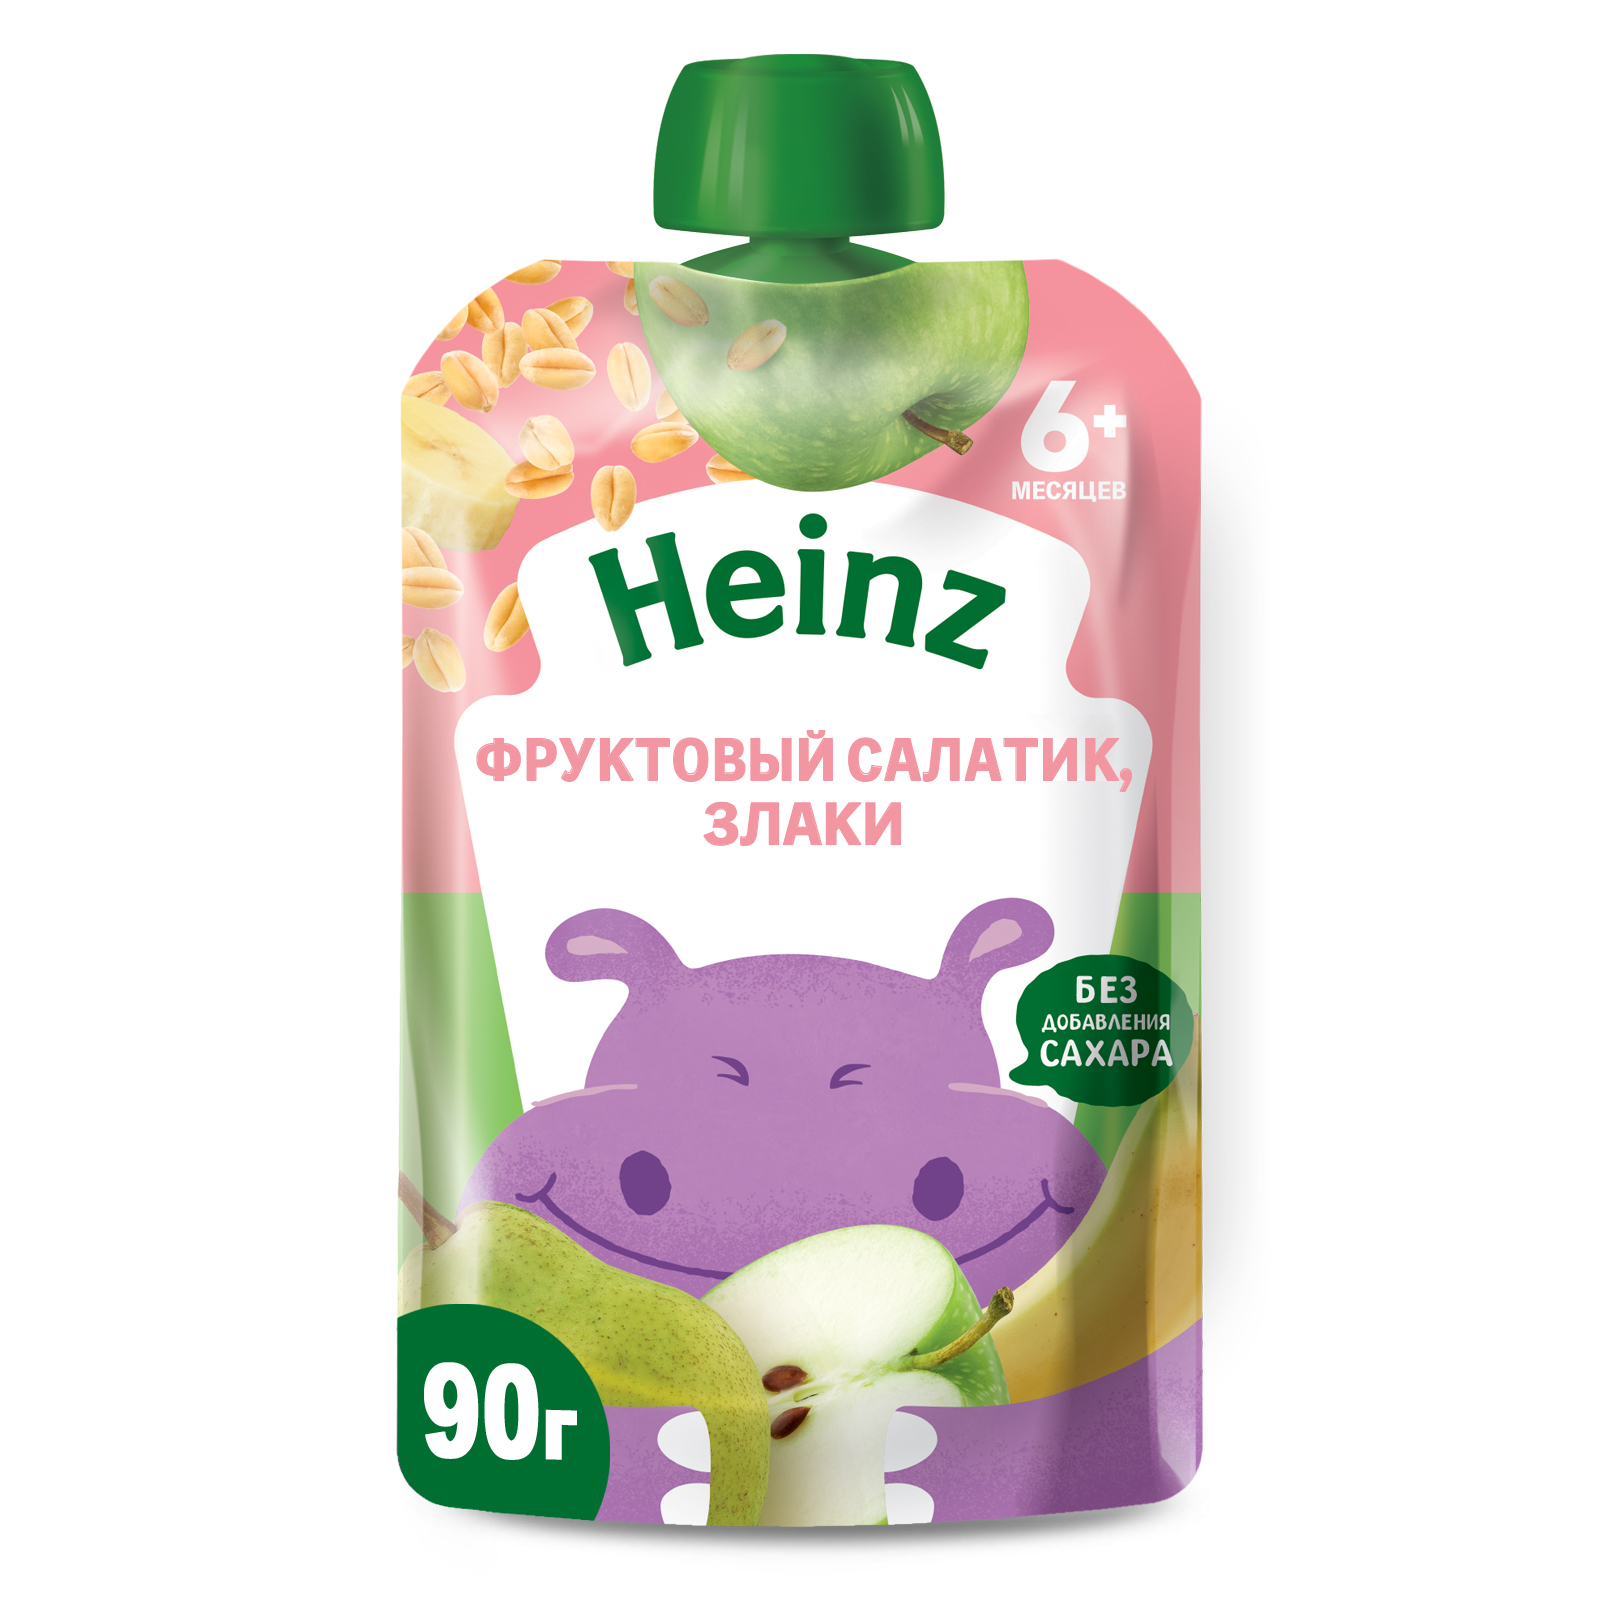 Пюре Heinz фруктовый салатик-злаки пауч 90г с 6месяцев - фото 1